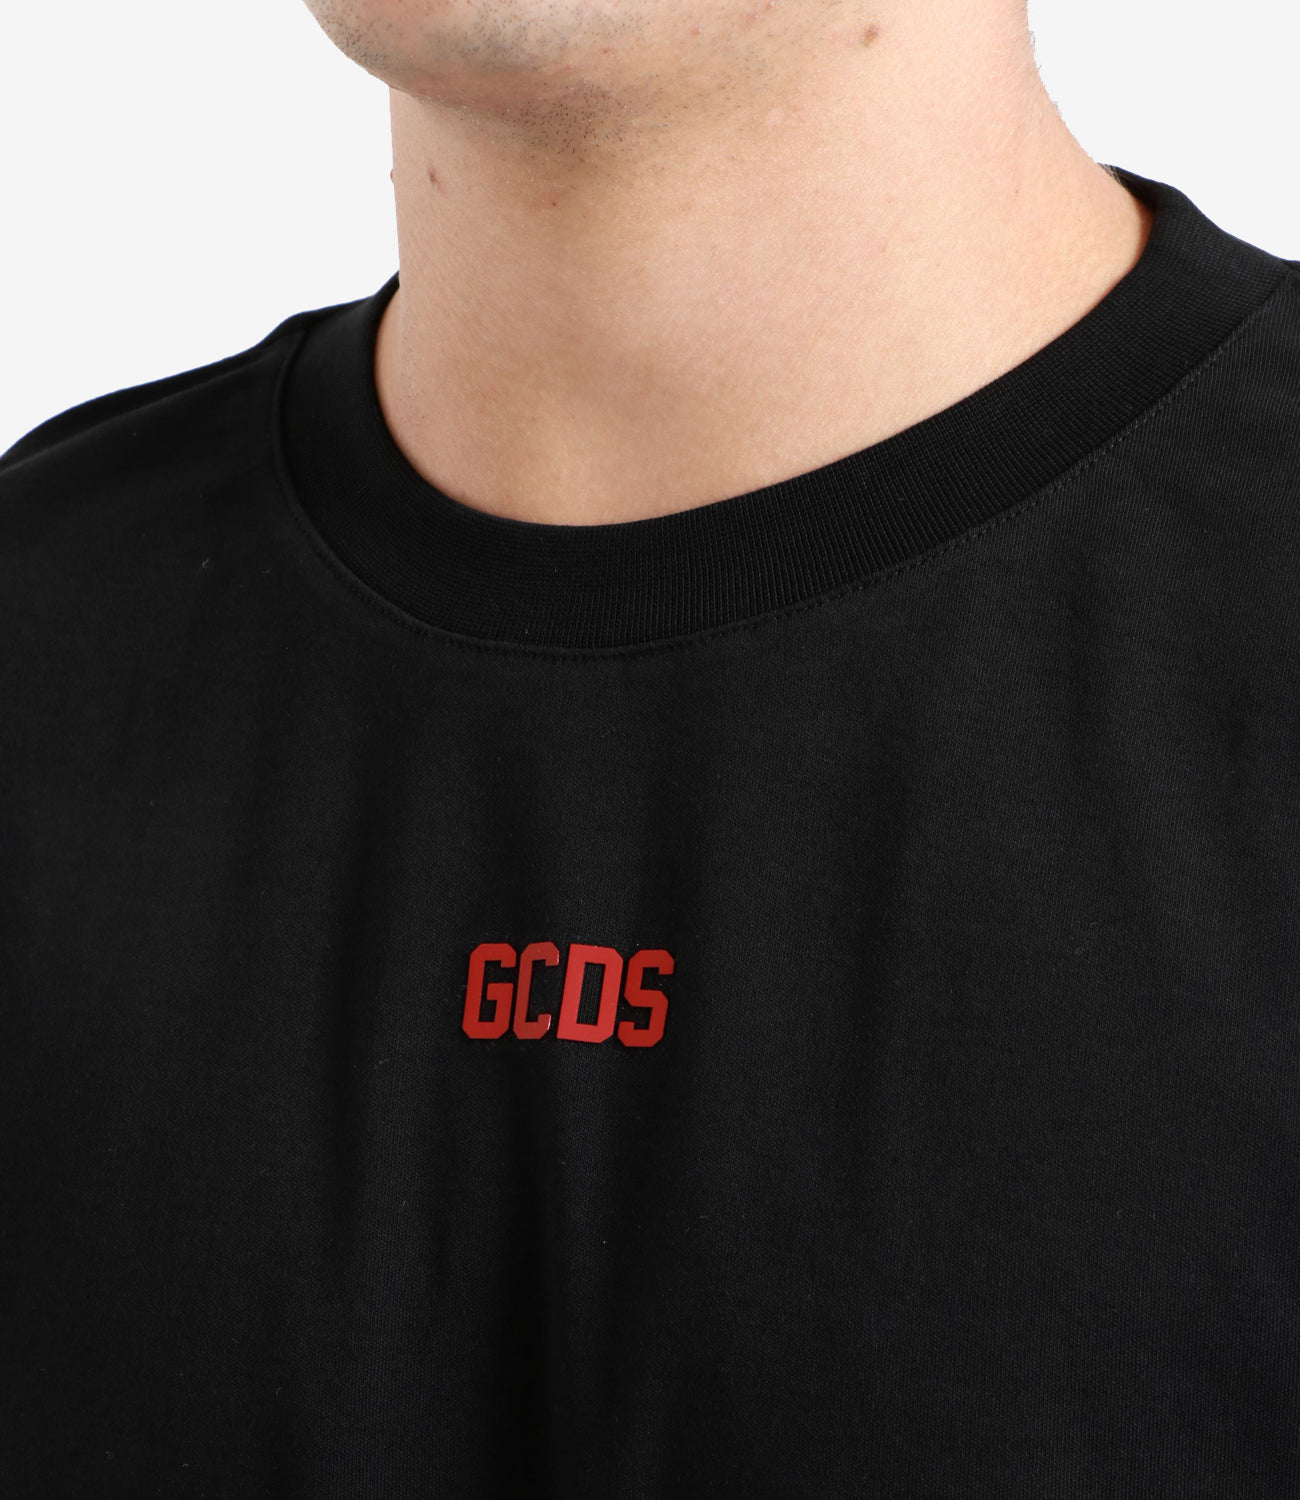 GCDS | T-Shirt Black